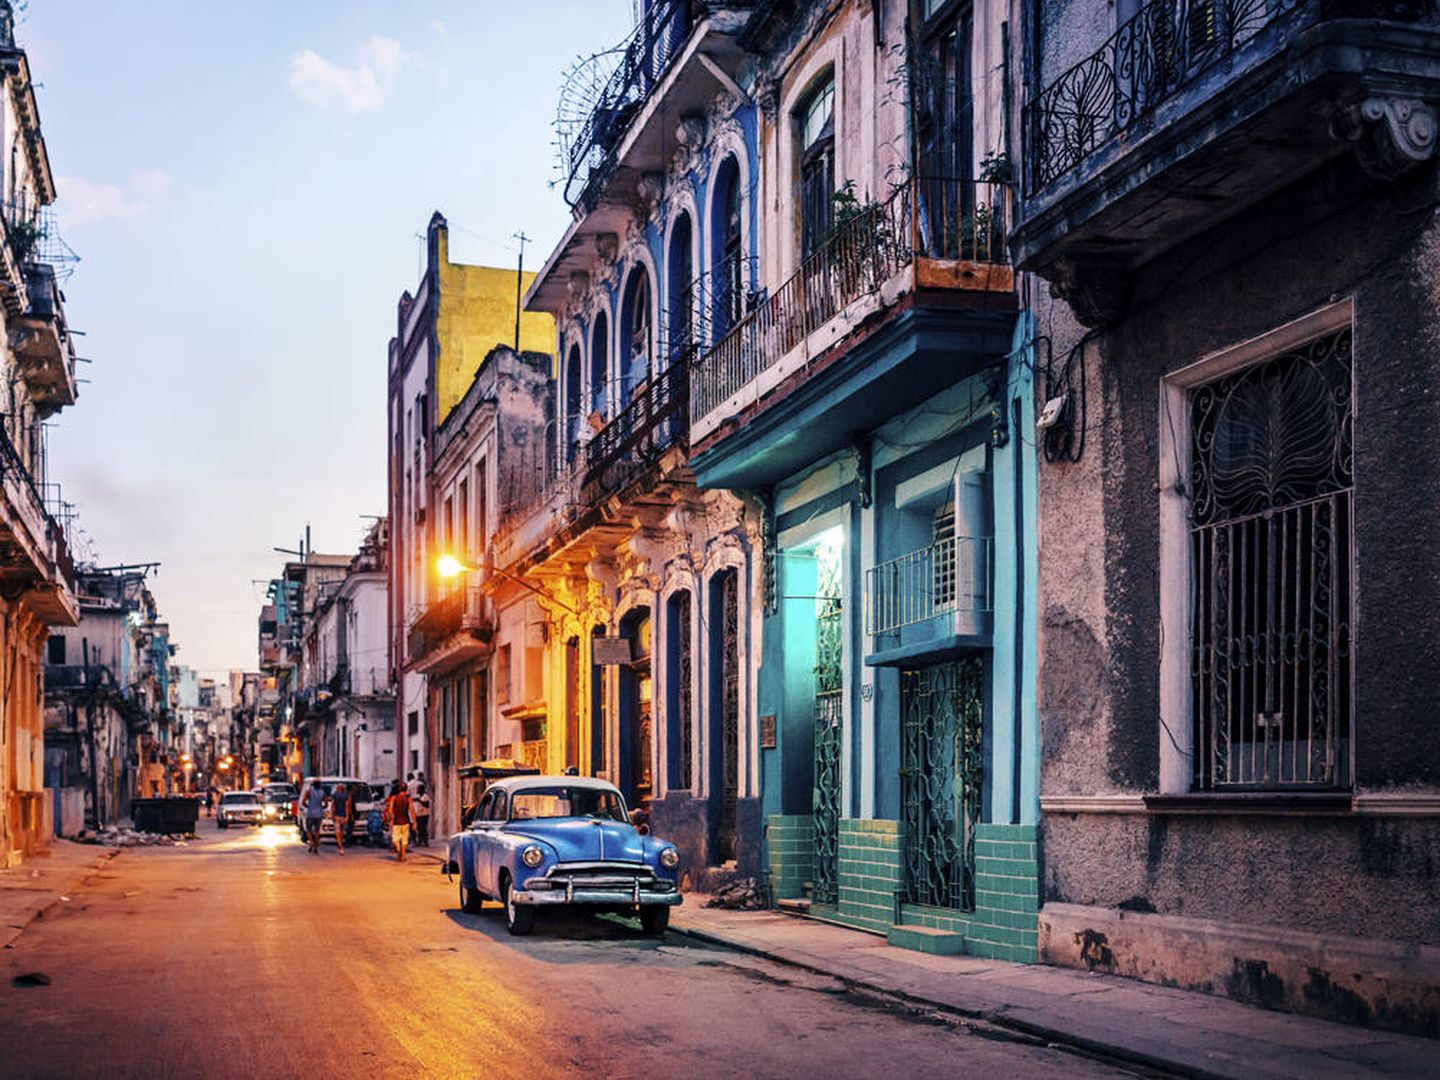 Una postal típica de Cuba, con sus vibrantes colores y sus coches antiguos (iStock)